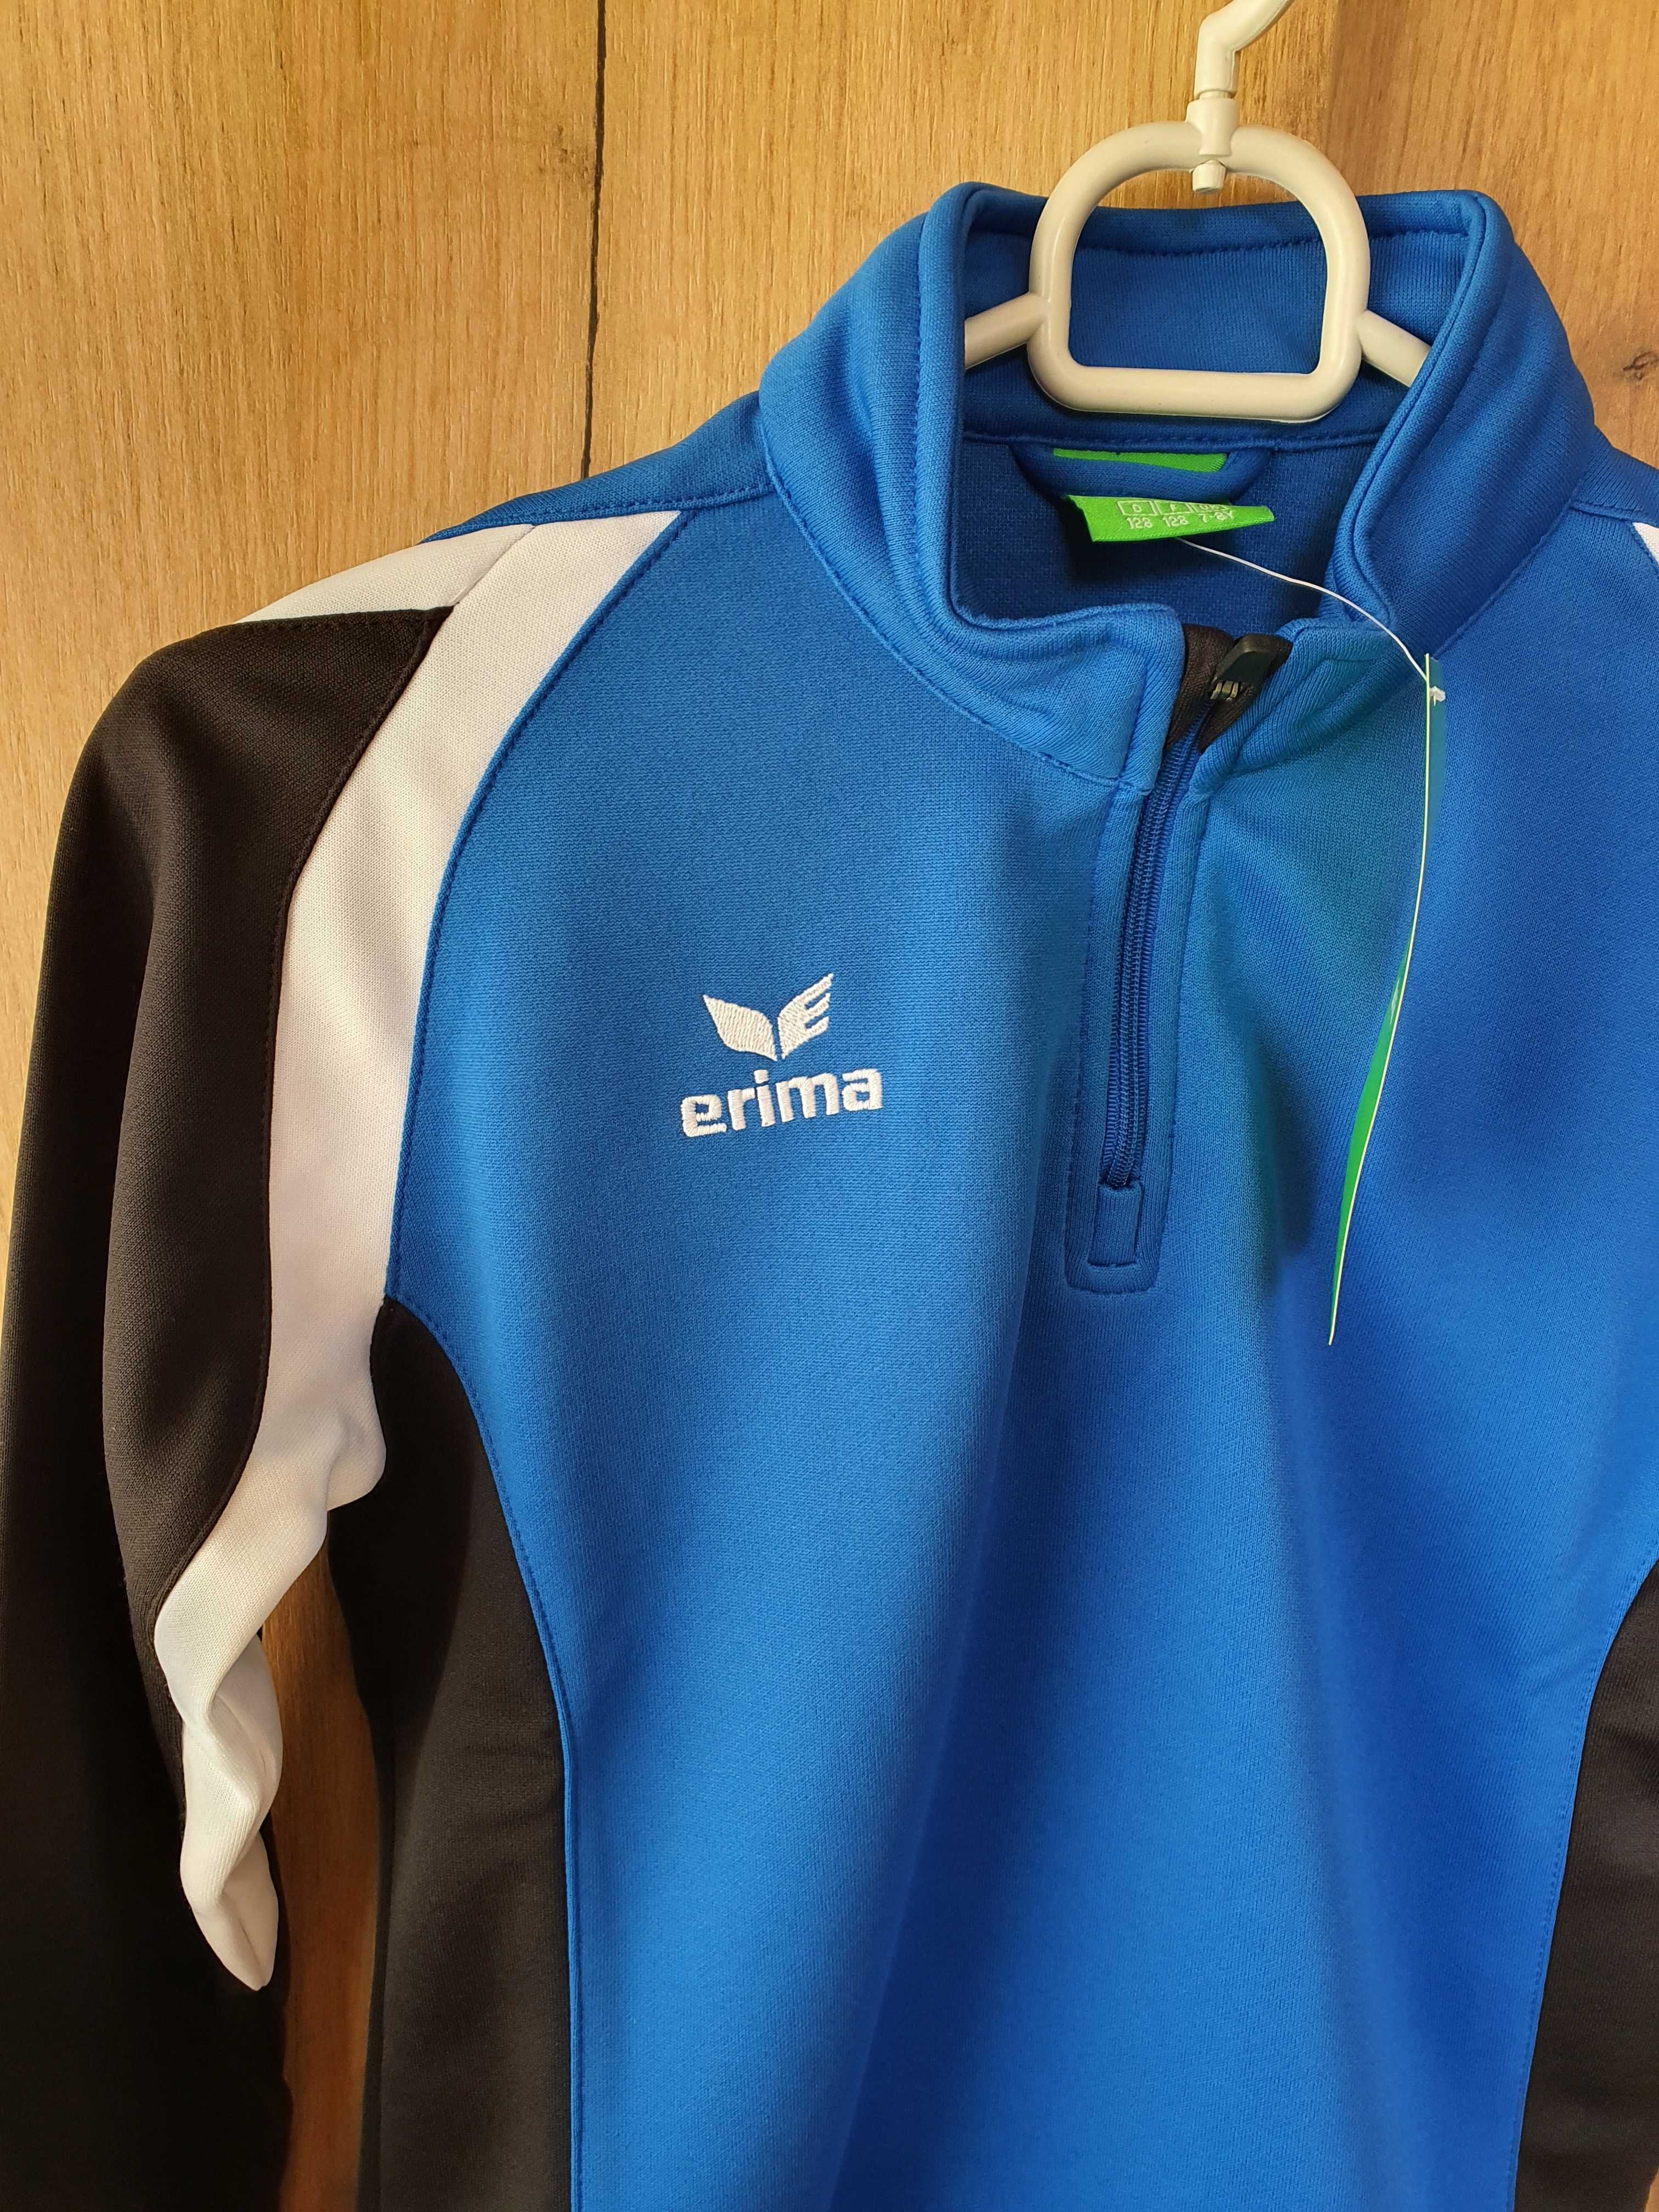 Bluza sportowa niemieckiej firmy Erima, rozmiar 128 cm, nowa z metką,